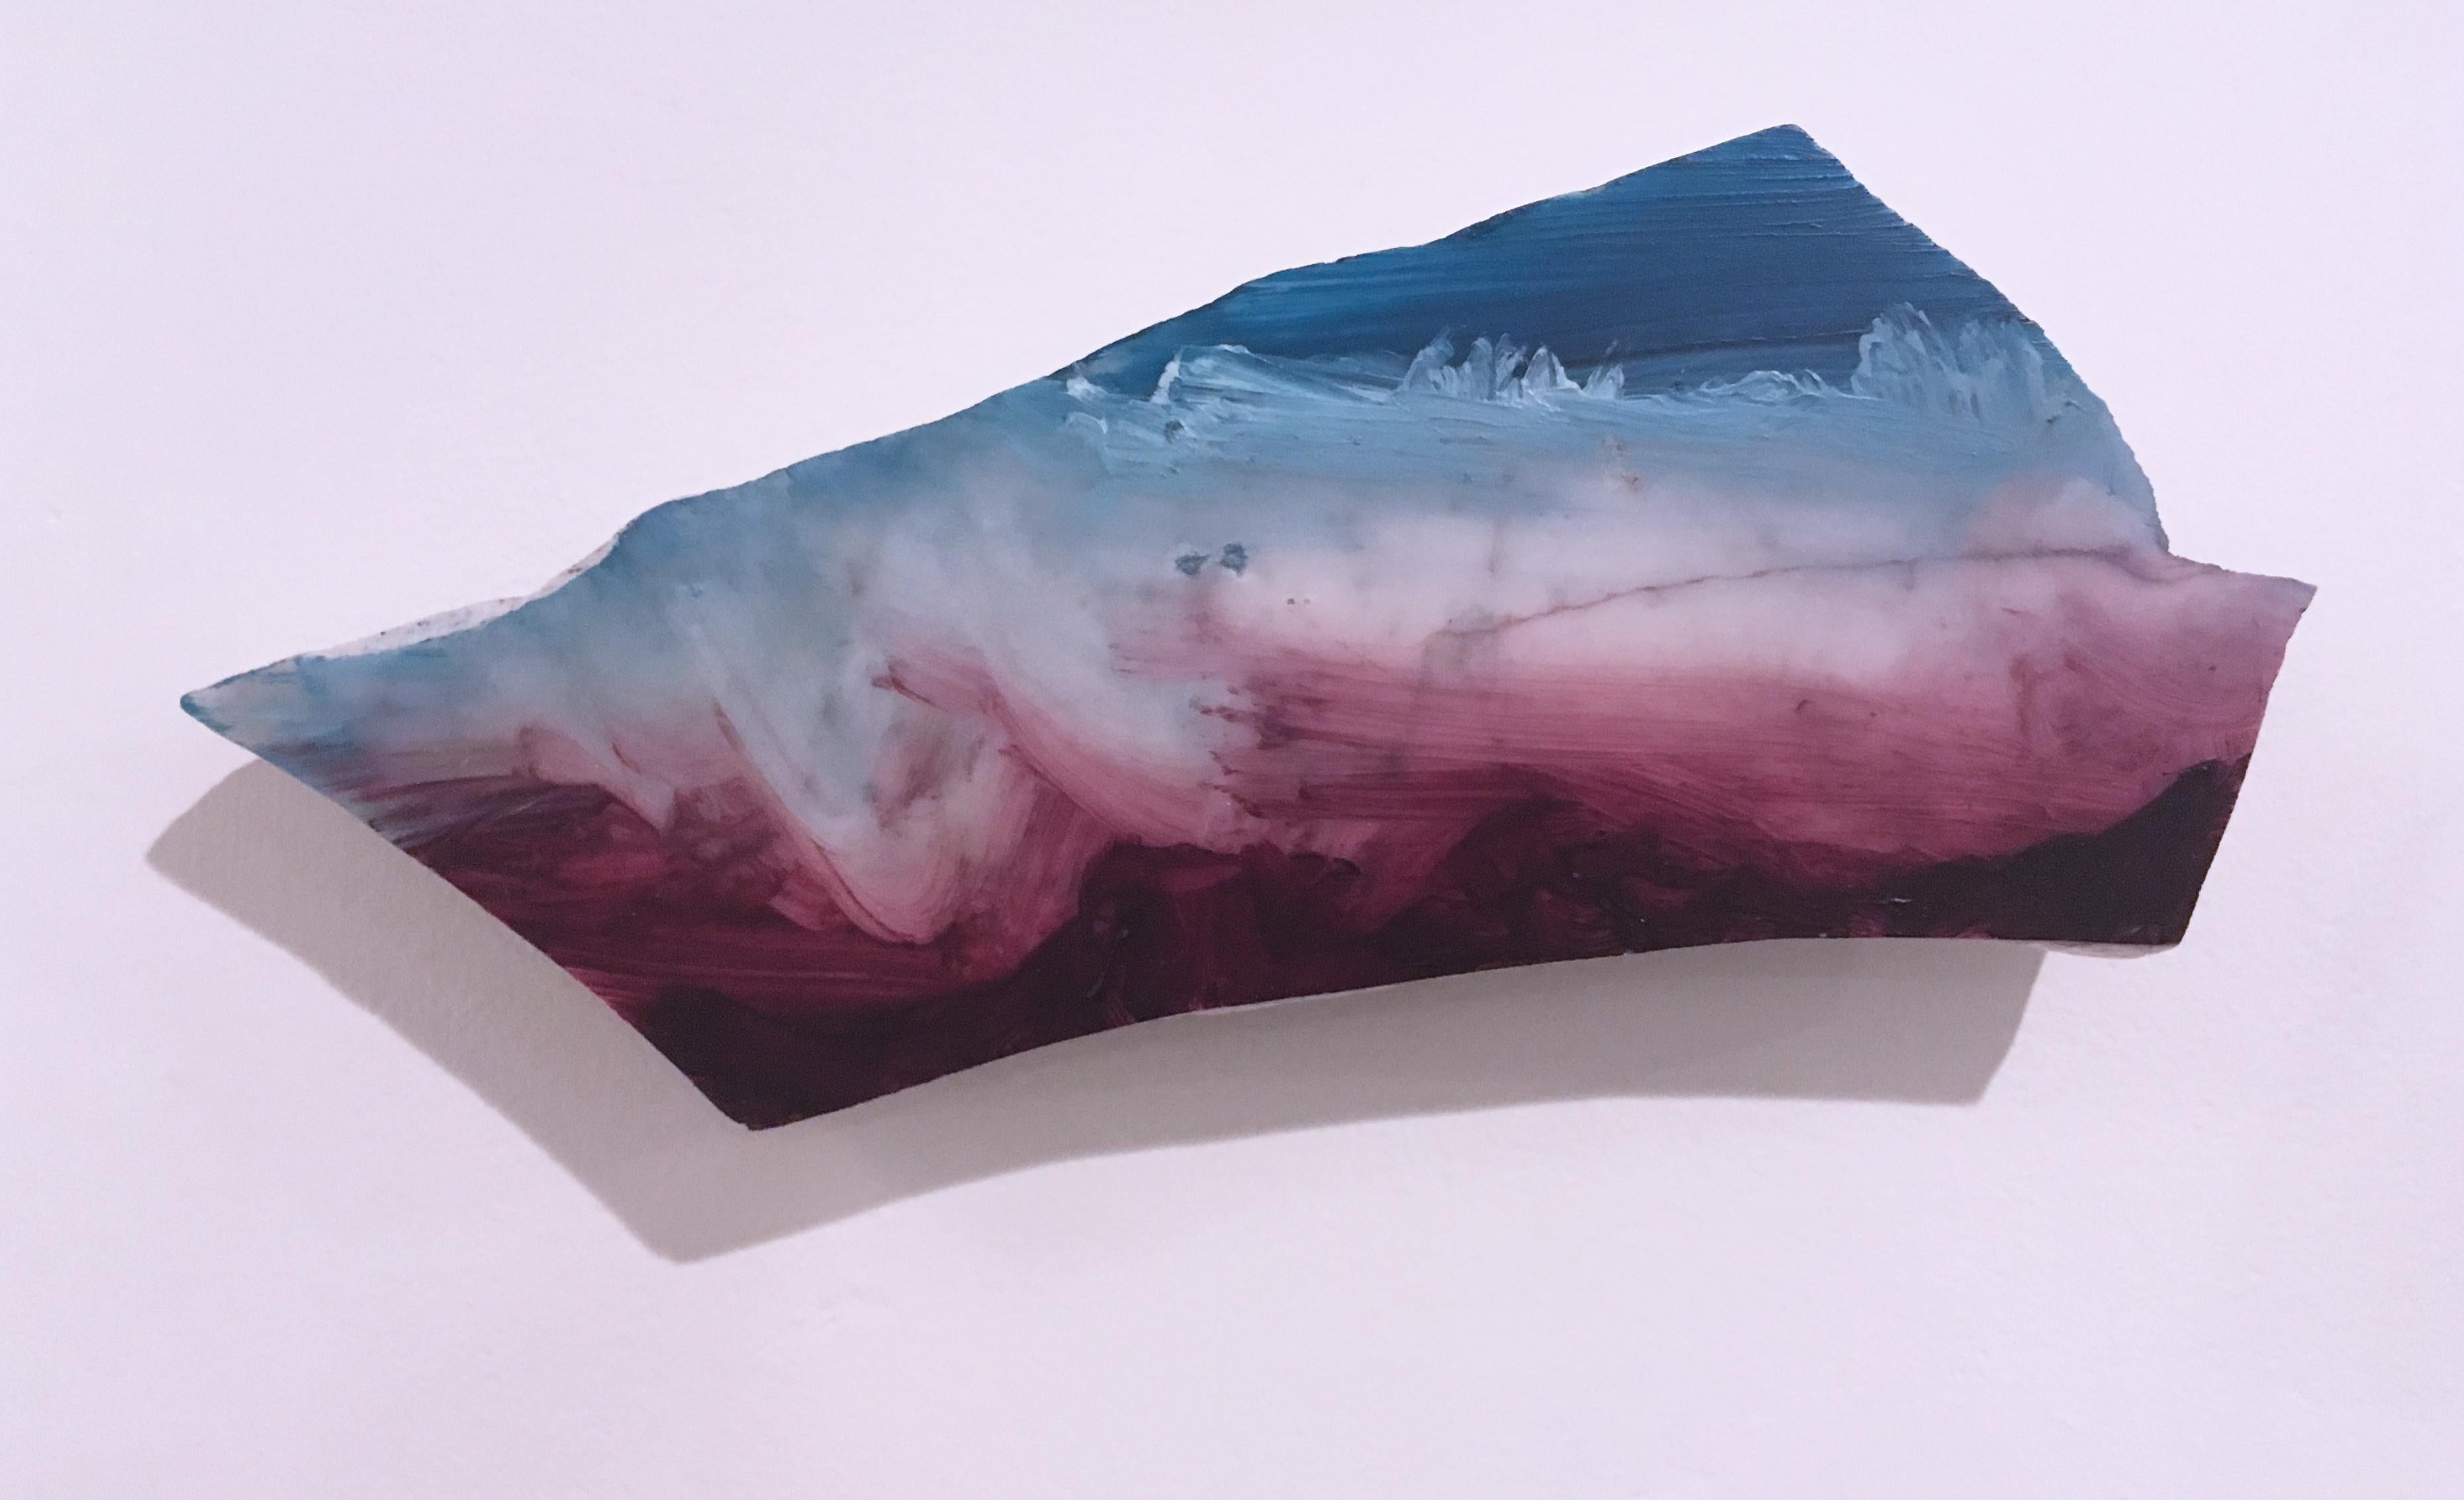 Abstract Sculpture Tom Banks - Sans titre « Marble Fragment 5 » 2019, huile, paysage, sculpture murale, nuages, bleu